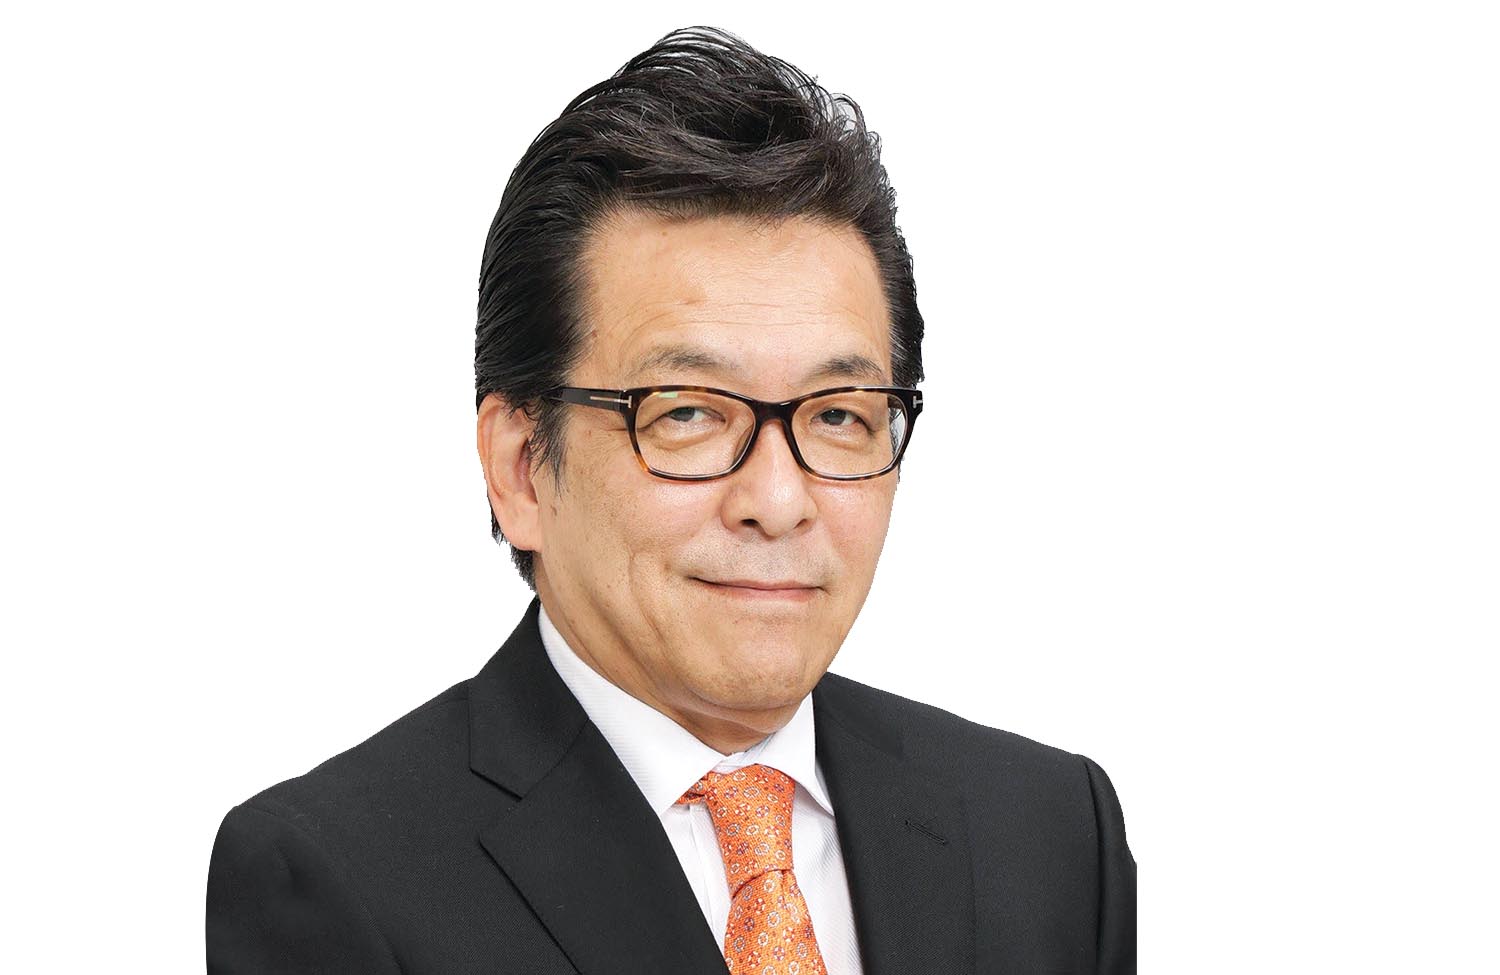 Ông Masataka “Sam” Yoshida, Giám đốc toàn cầu Dịch vụ mua bán - sáp nhập (M&A) xuyên quốc gia của RECOF Corporation, Tổng giám đốc RECOF Việt Nam